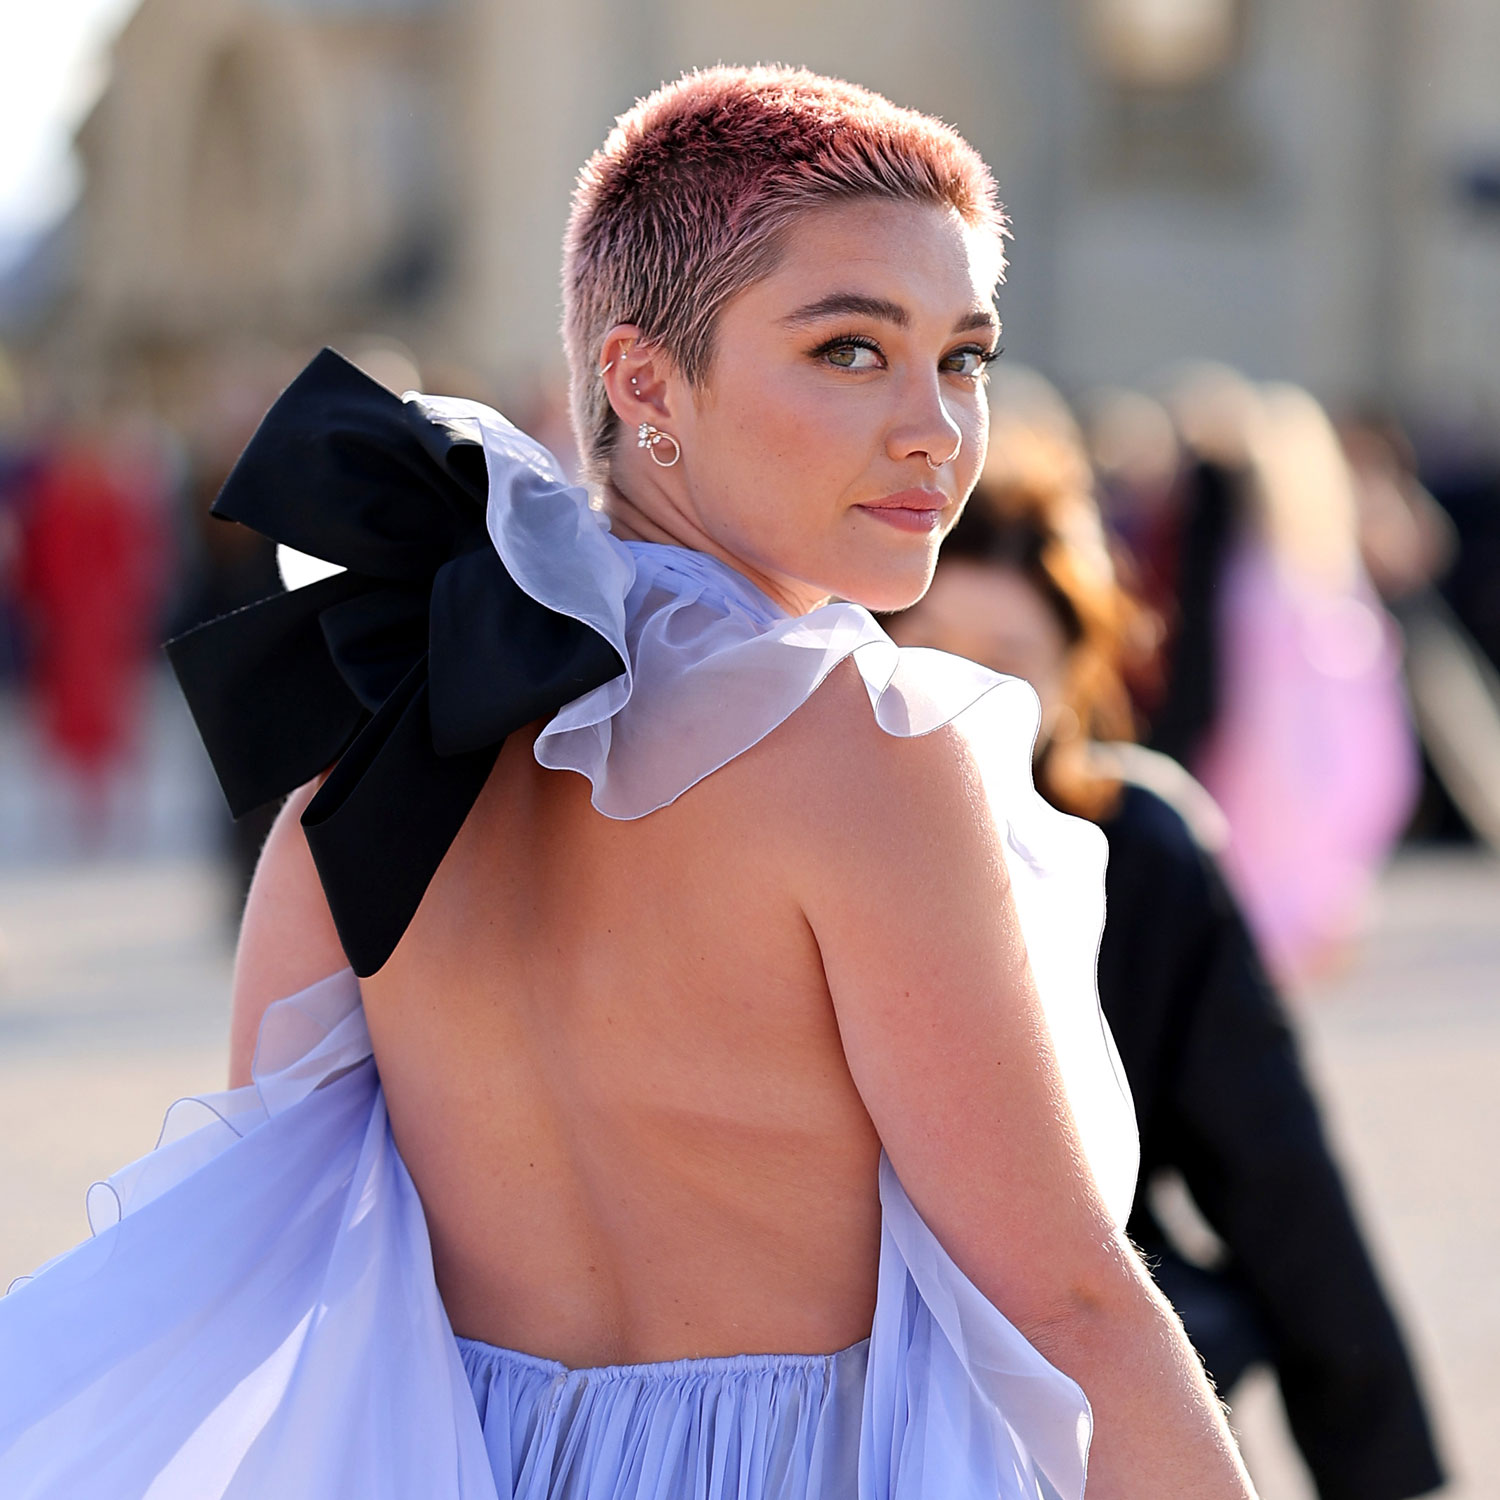 Florence Pugh Wears a Sheer Crop Top at Paris Fashion Week